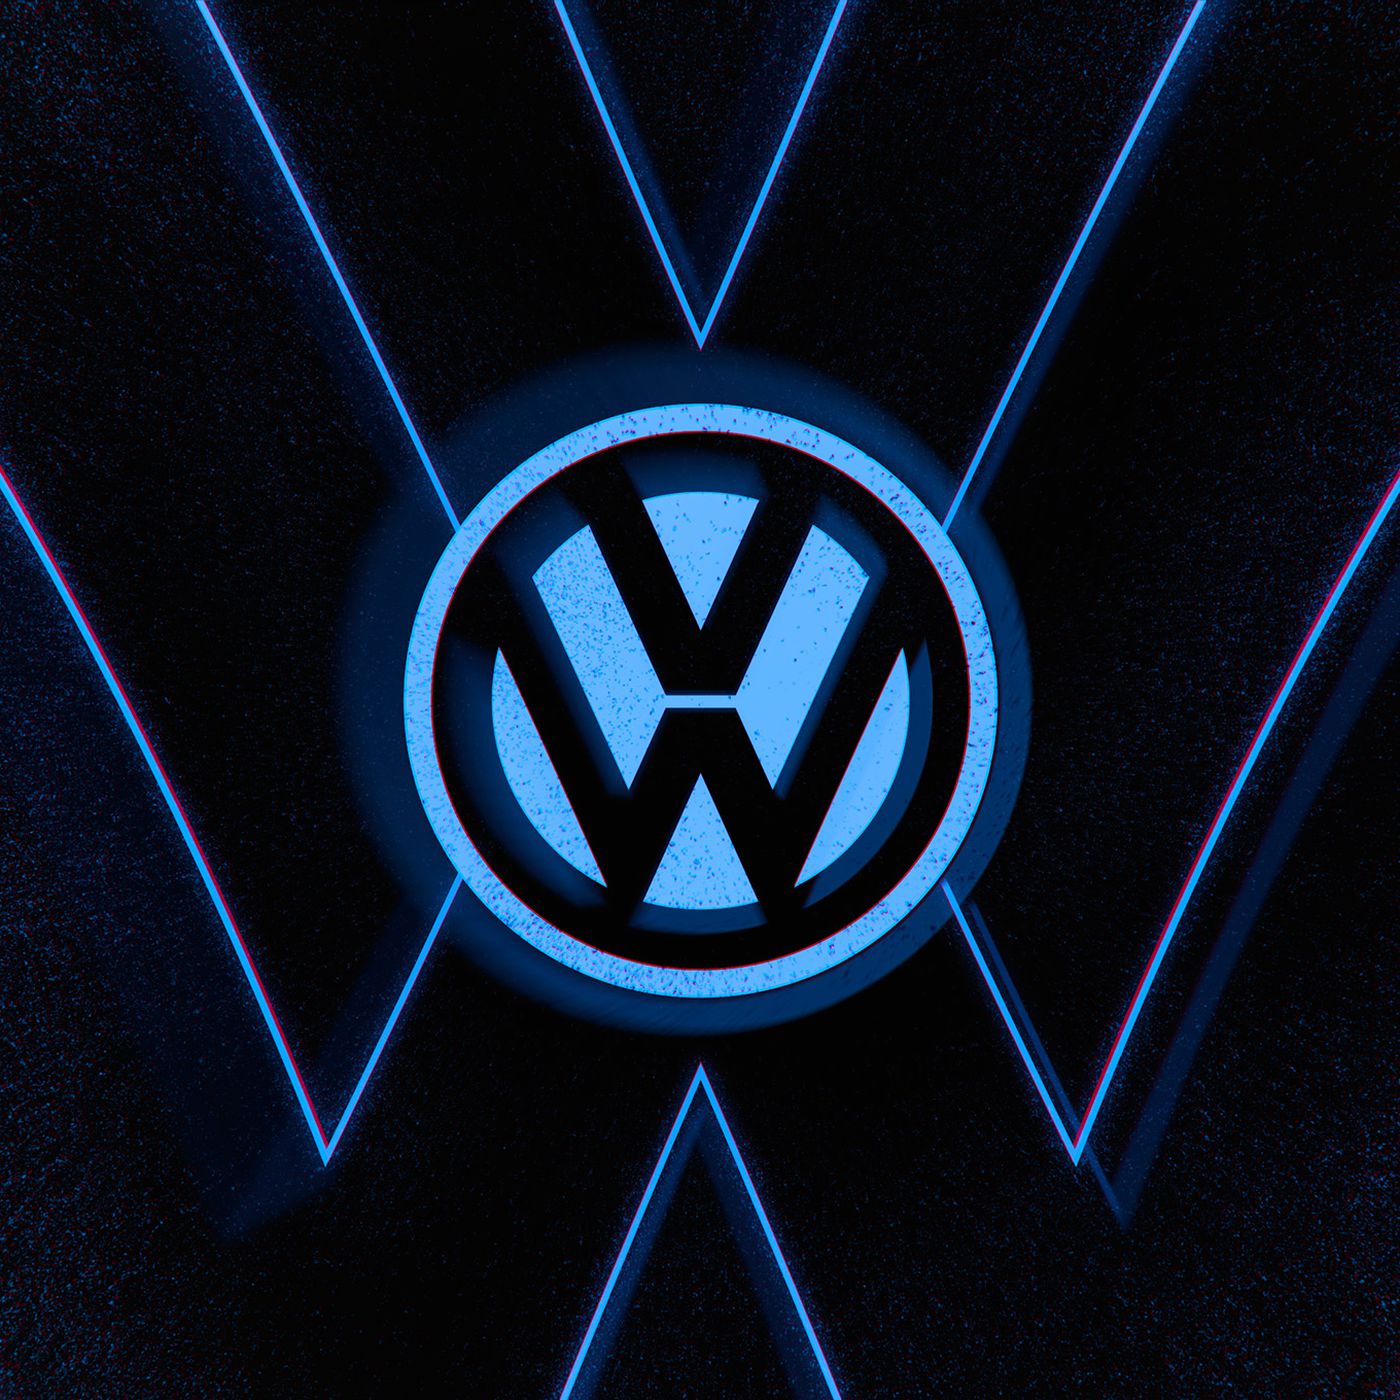 Volkswagen Logo Wallpapers